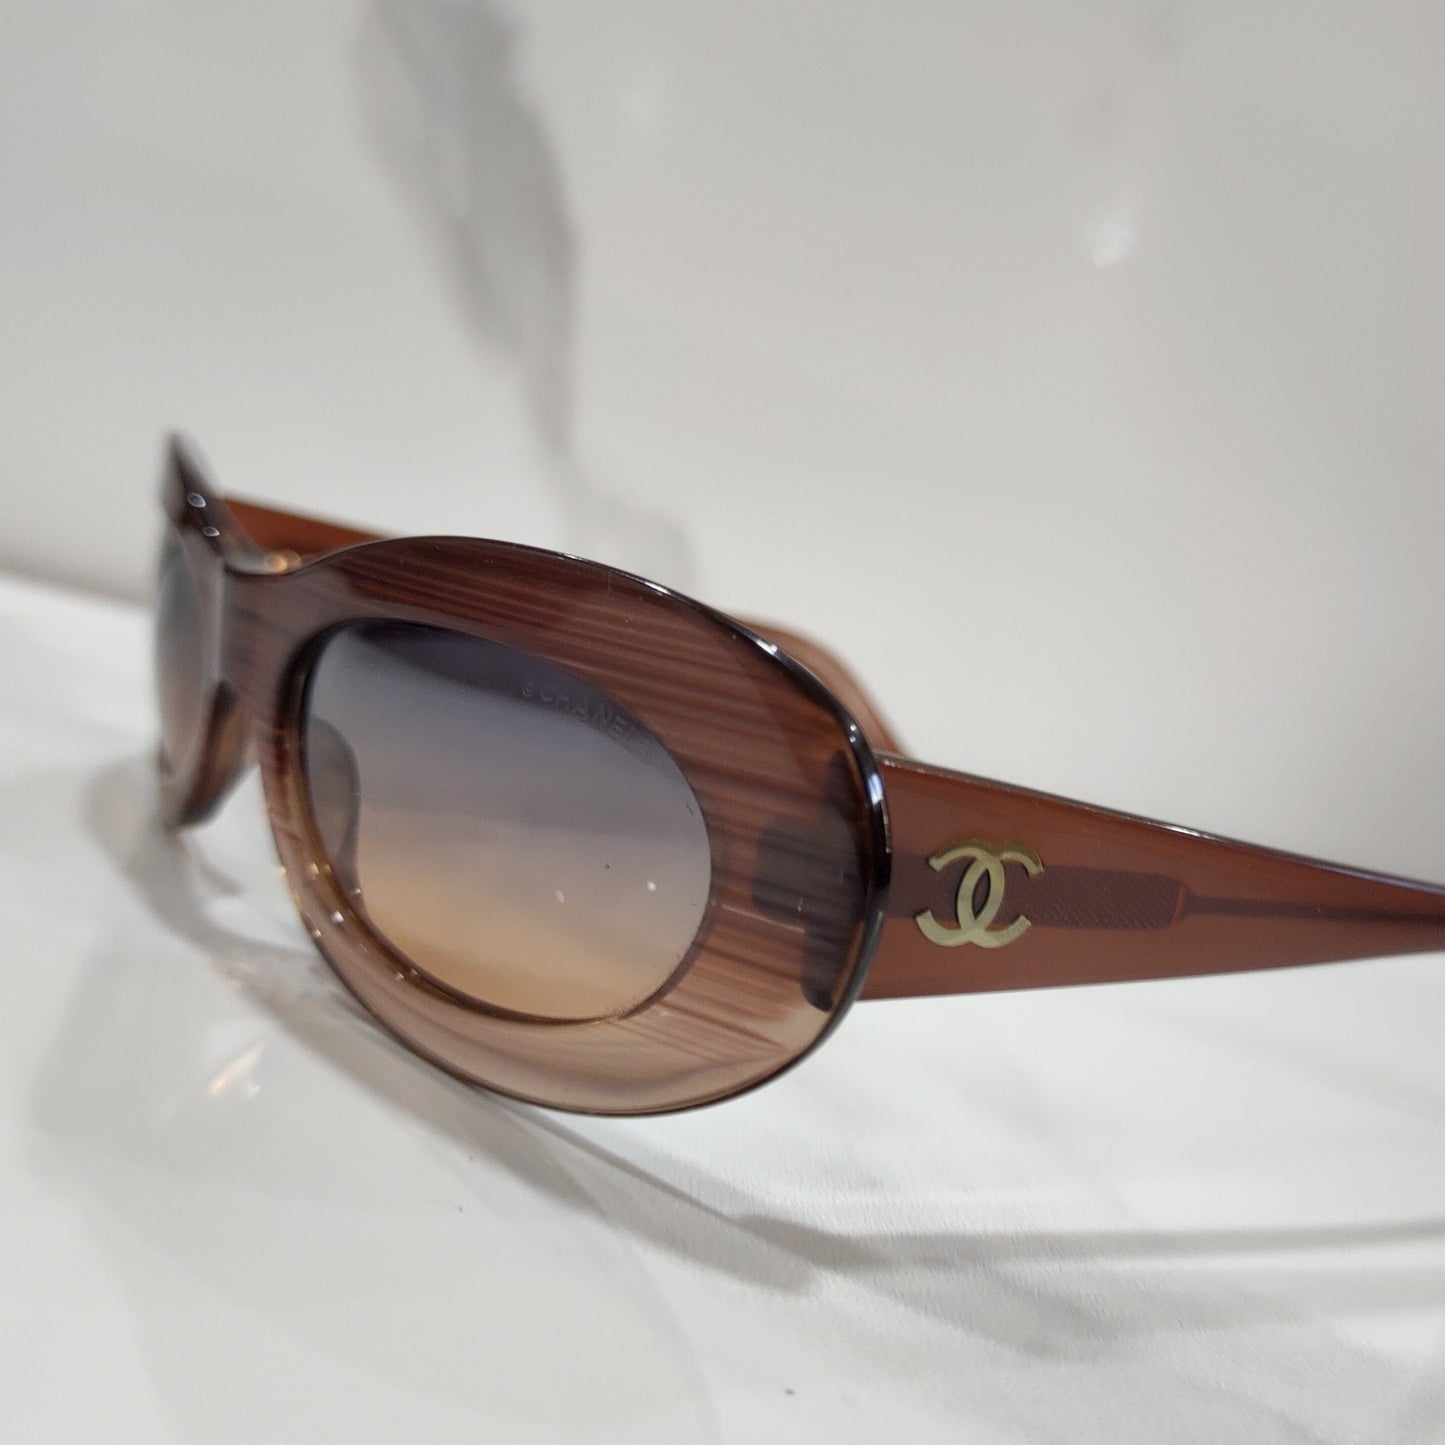 Chanel 型号 5007 标志性 brille 边框太阳镜 90 年代色调